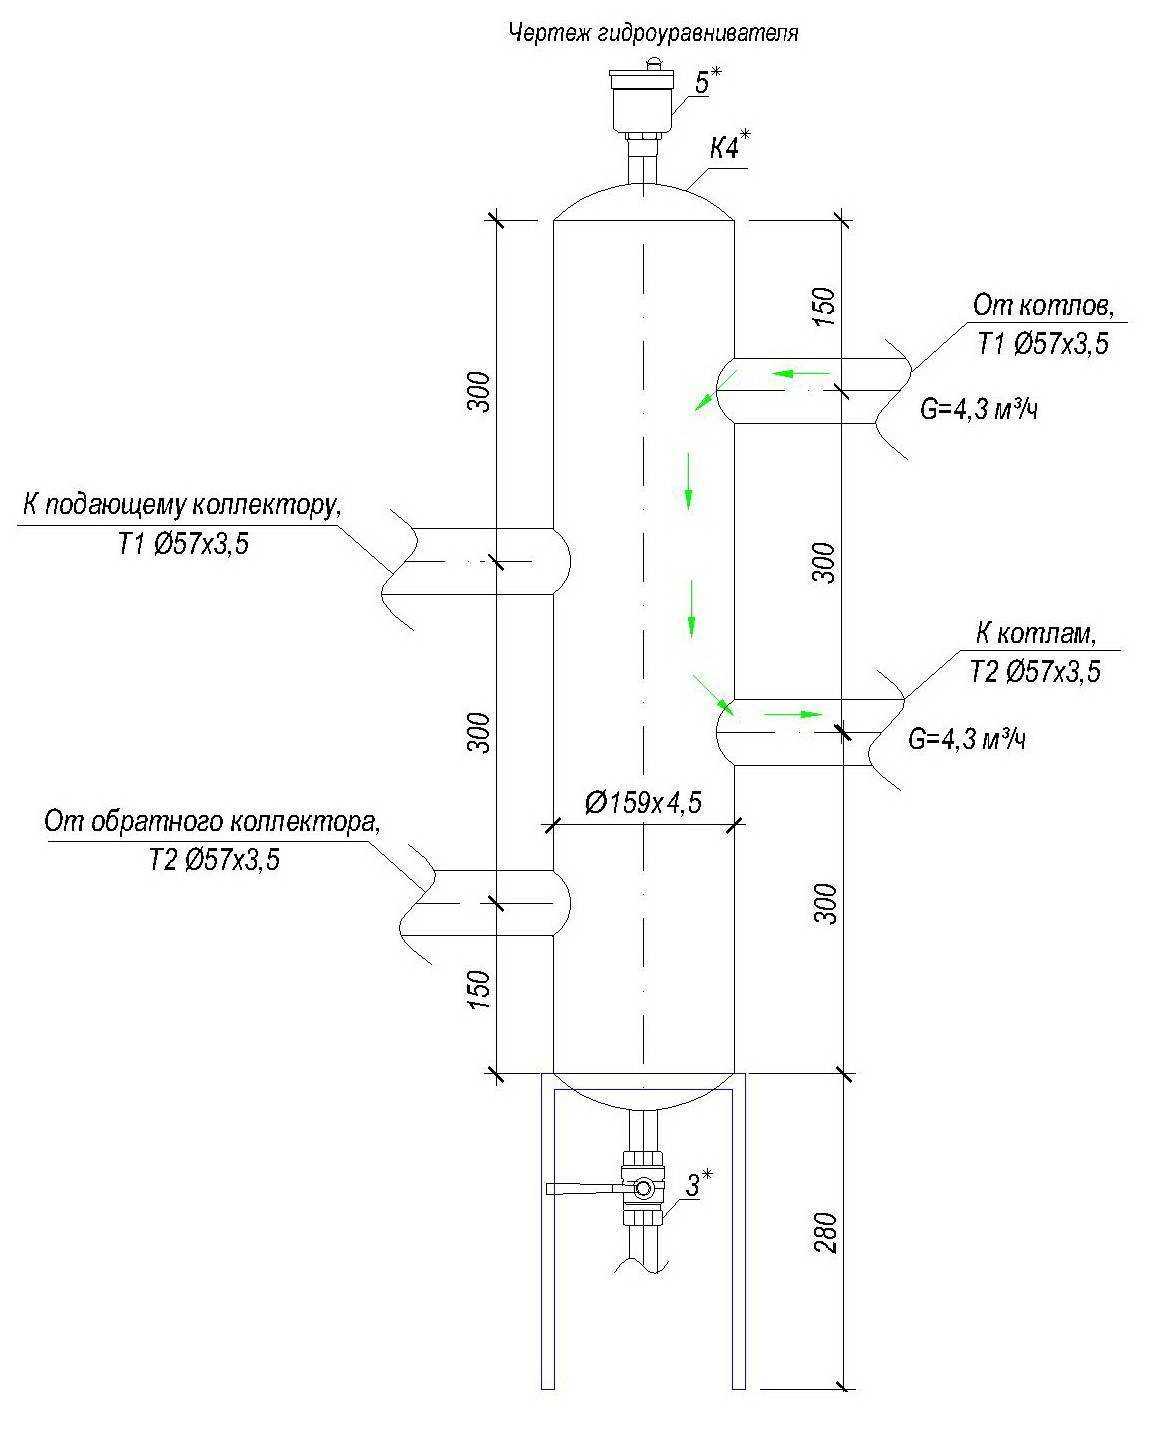 Устройство гидрострелки отопления: что такое гидравлическая стрелка в отоплении, схема гидравлического разделителя, как работает, как подобрать, подбор по мощности котла